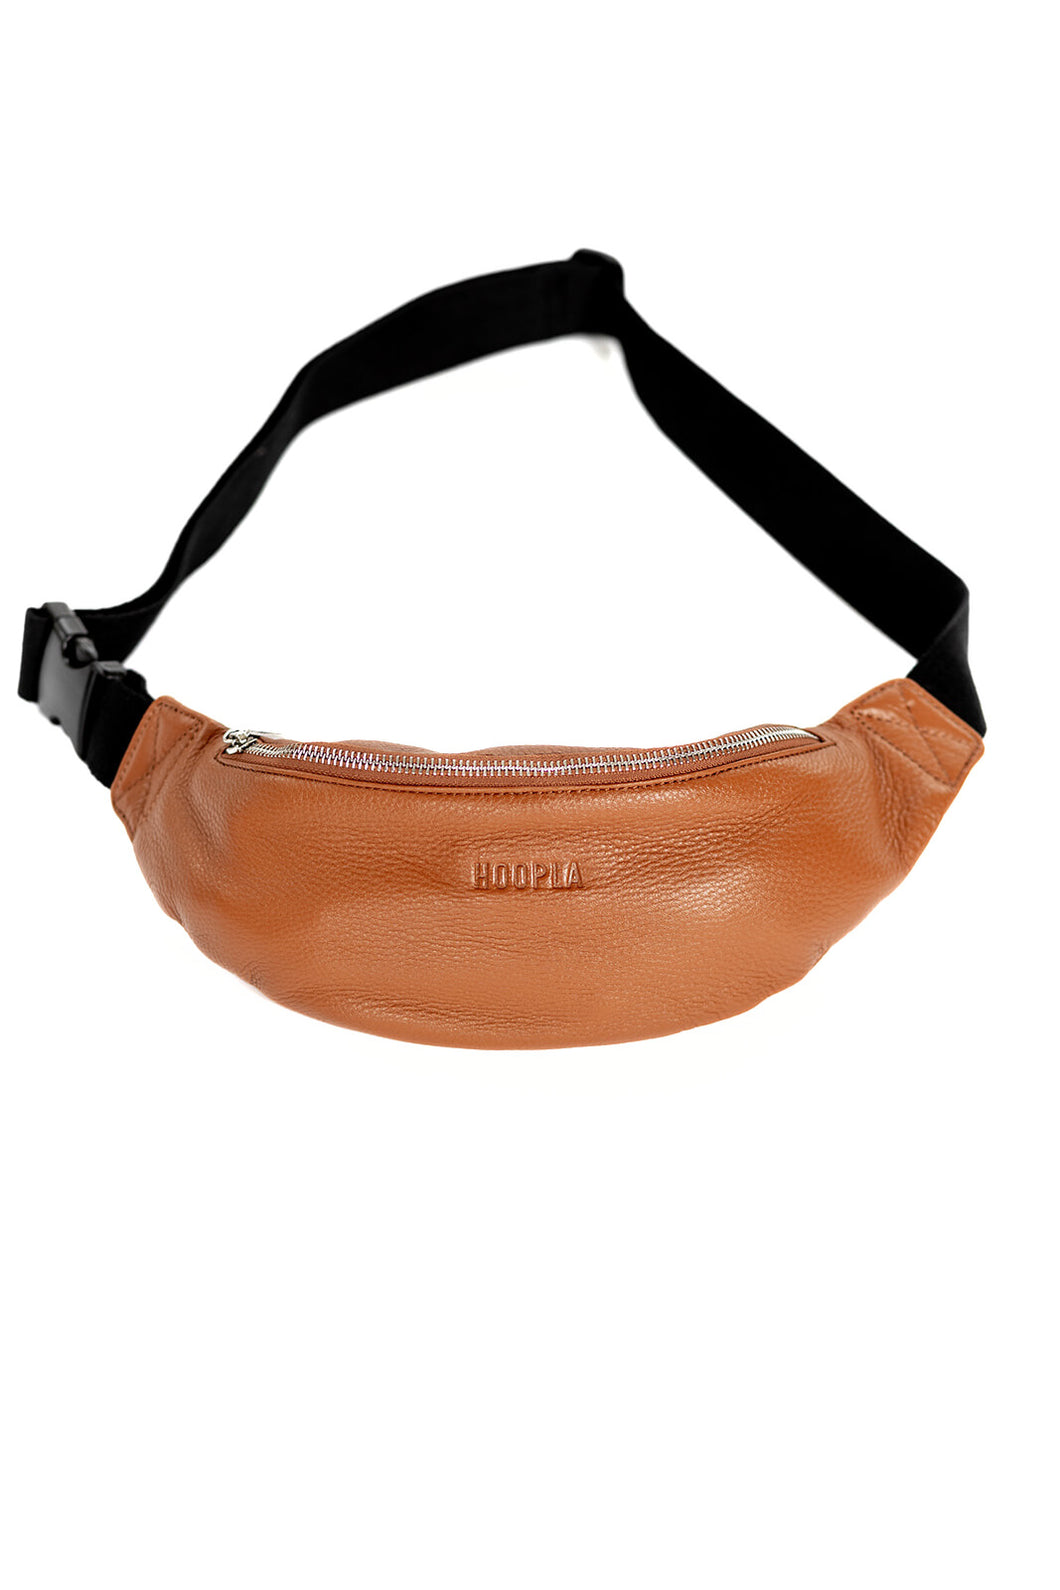 Tan Leather Bum bag